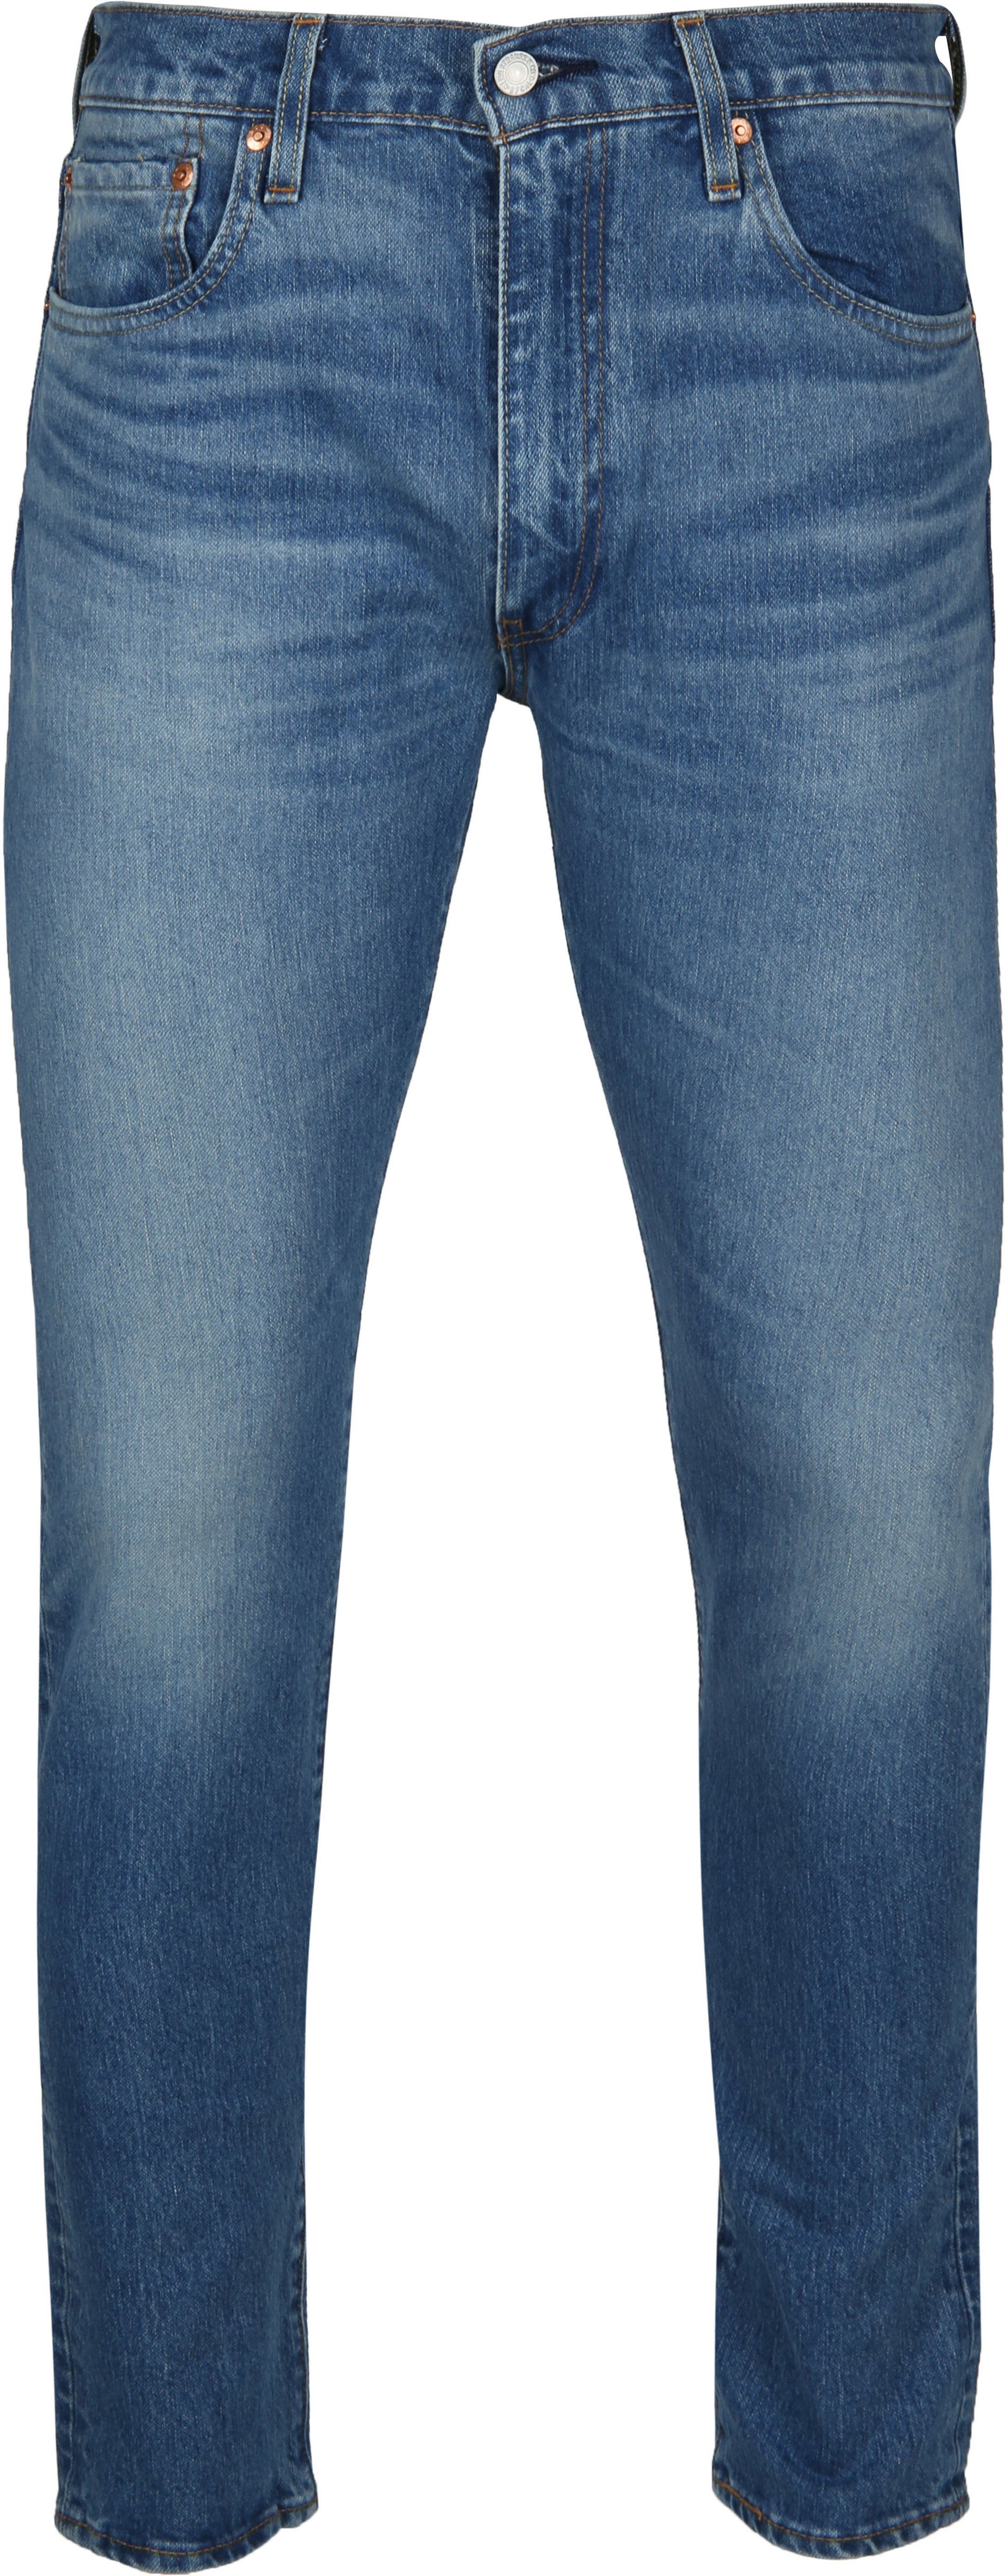 Levi’s 512 Jeans Slim Taper Fit Blue size W 30